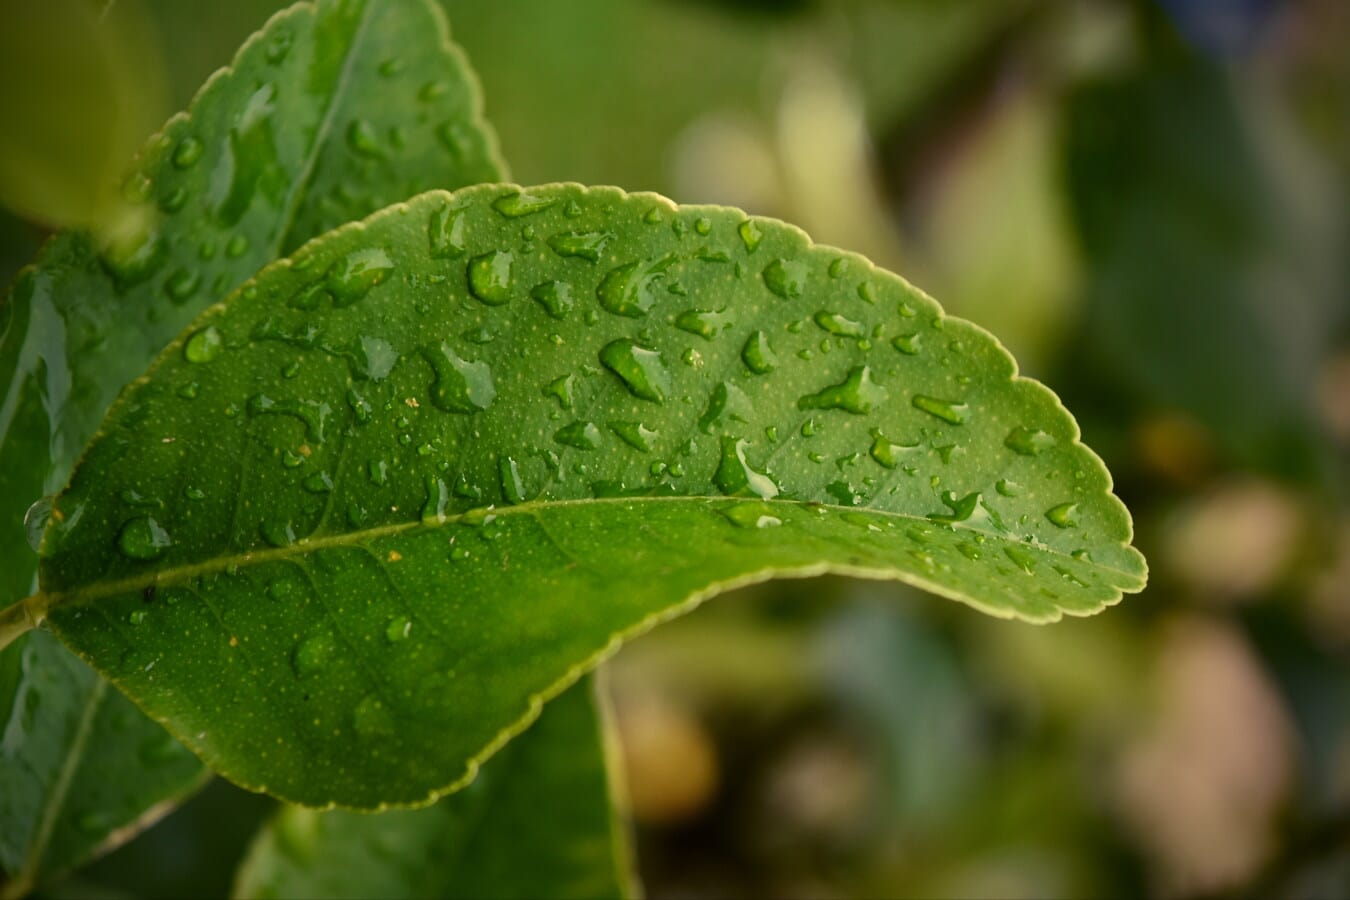 σταγόνα, σταγονίδια, σταγόνα βροχής, βροχή, πράσινο φύλλο, από κοντά, φύλλο, βότανο, φυτό, φύση